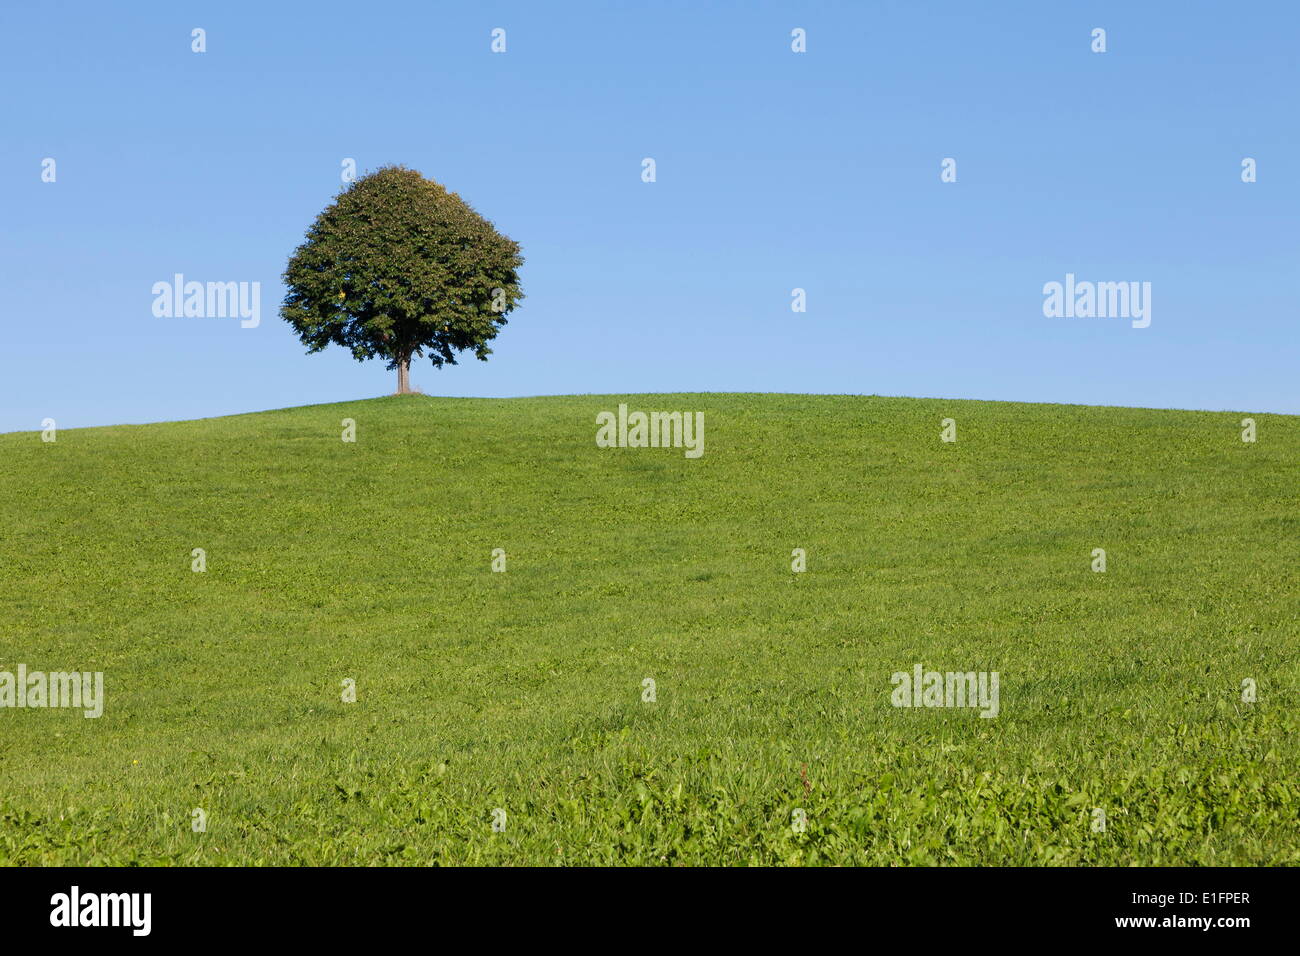 Seul arbre sur une colline, l'Allgau, souabe, Baden Wurtemberg, Allemagne, Europe Banque D'Images